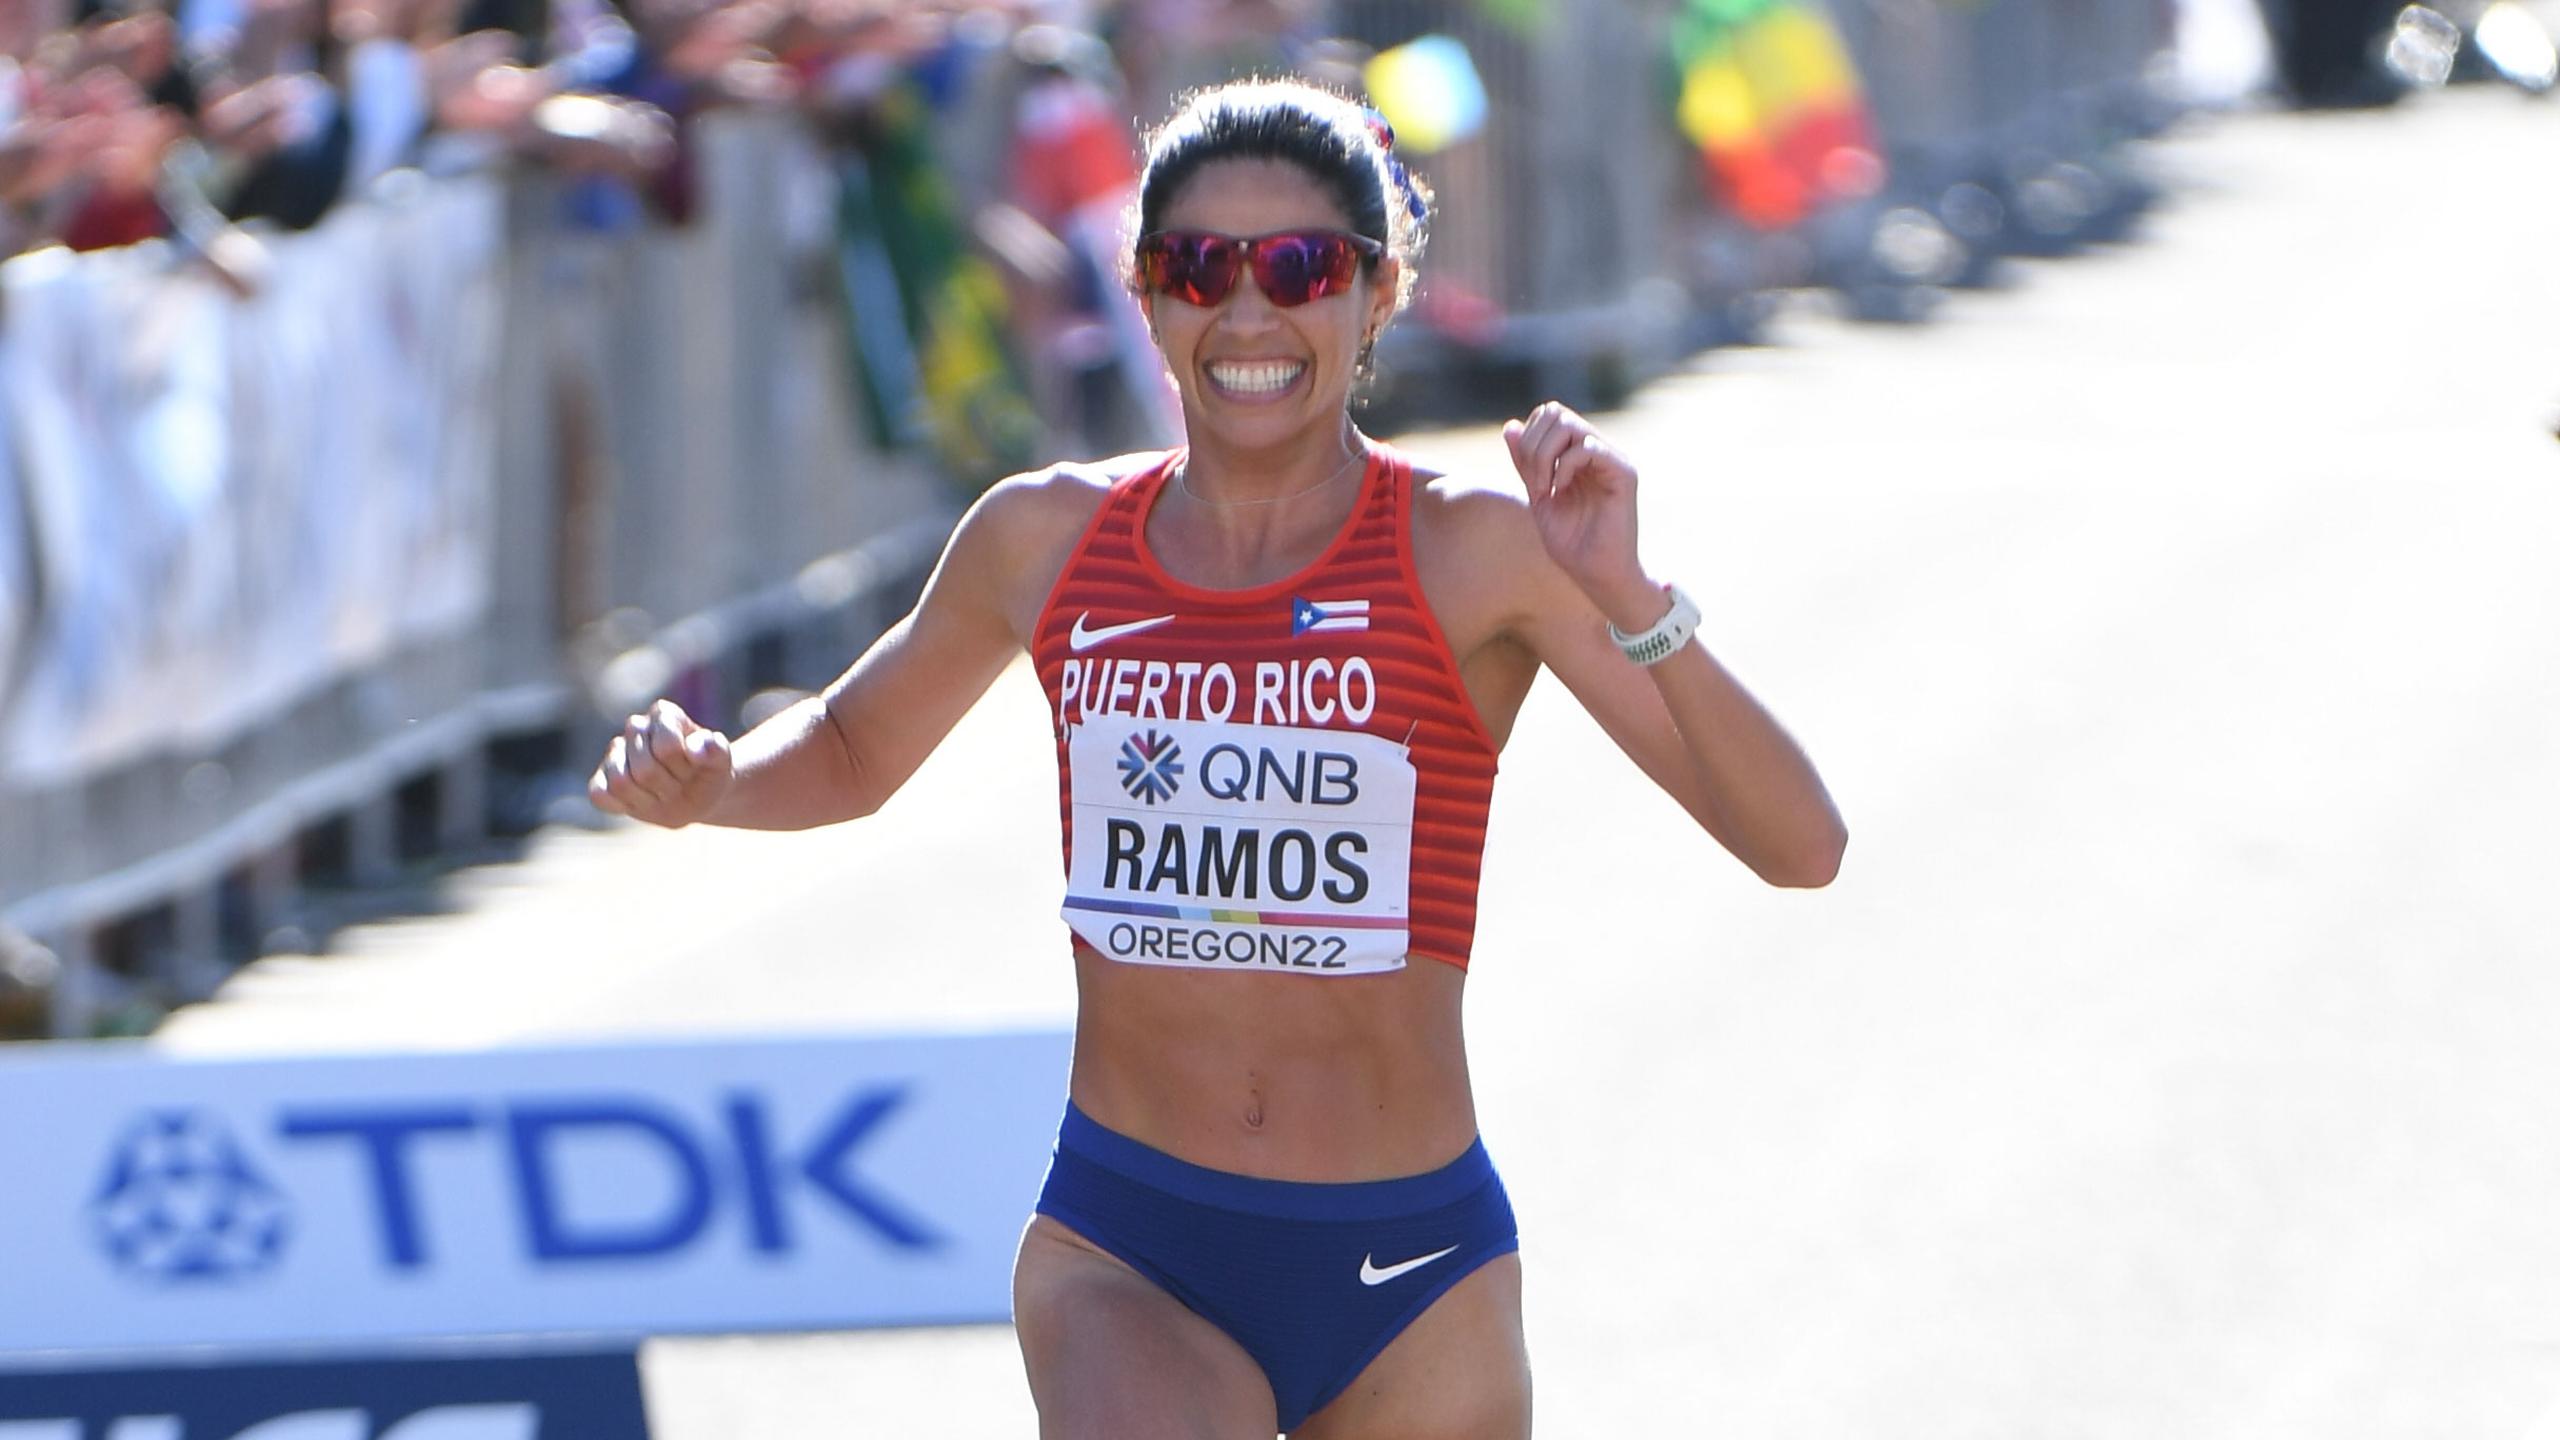 La boricua Beverly Ramos ha sido al momento la atleta boricua que mejor desempeño ha tenido en Oregon bajo el criterio de haber mejorado su previo mejor registro para el Maratón, fijando, de paso, una nueva marca nacional con un corrido de 2 horas con 31.10 minutos.